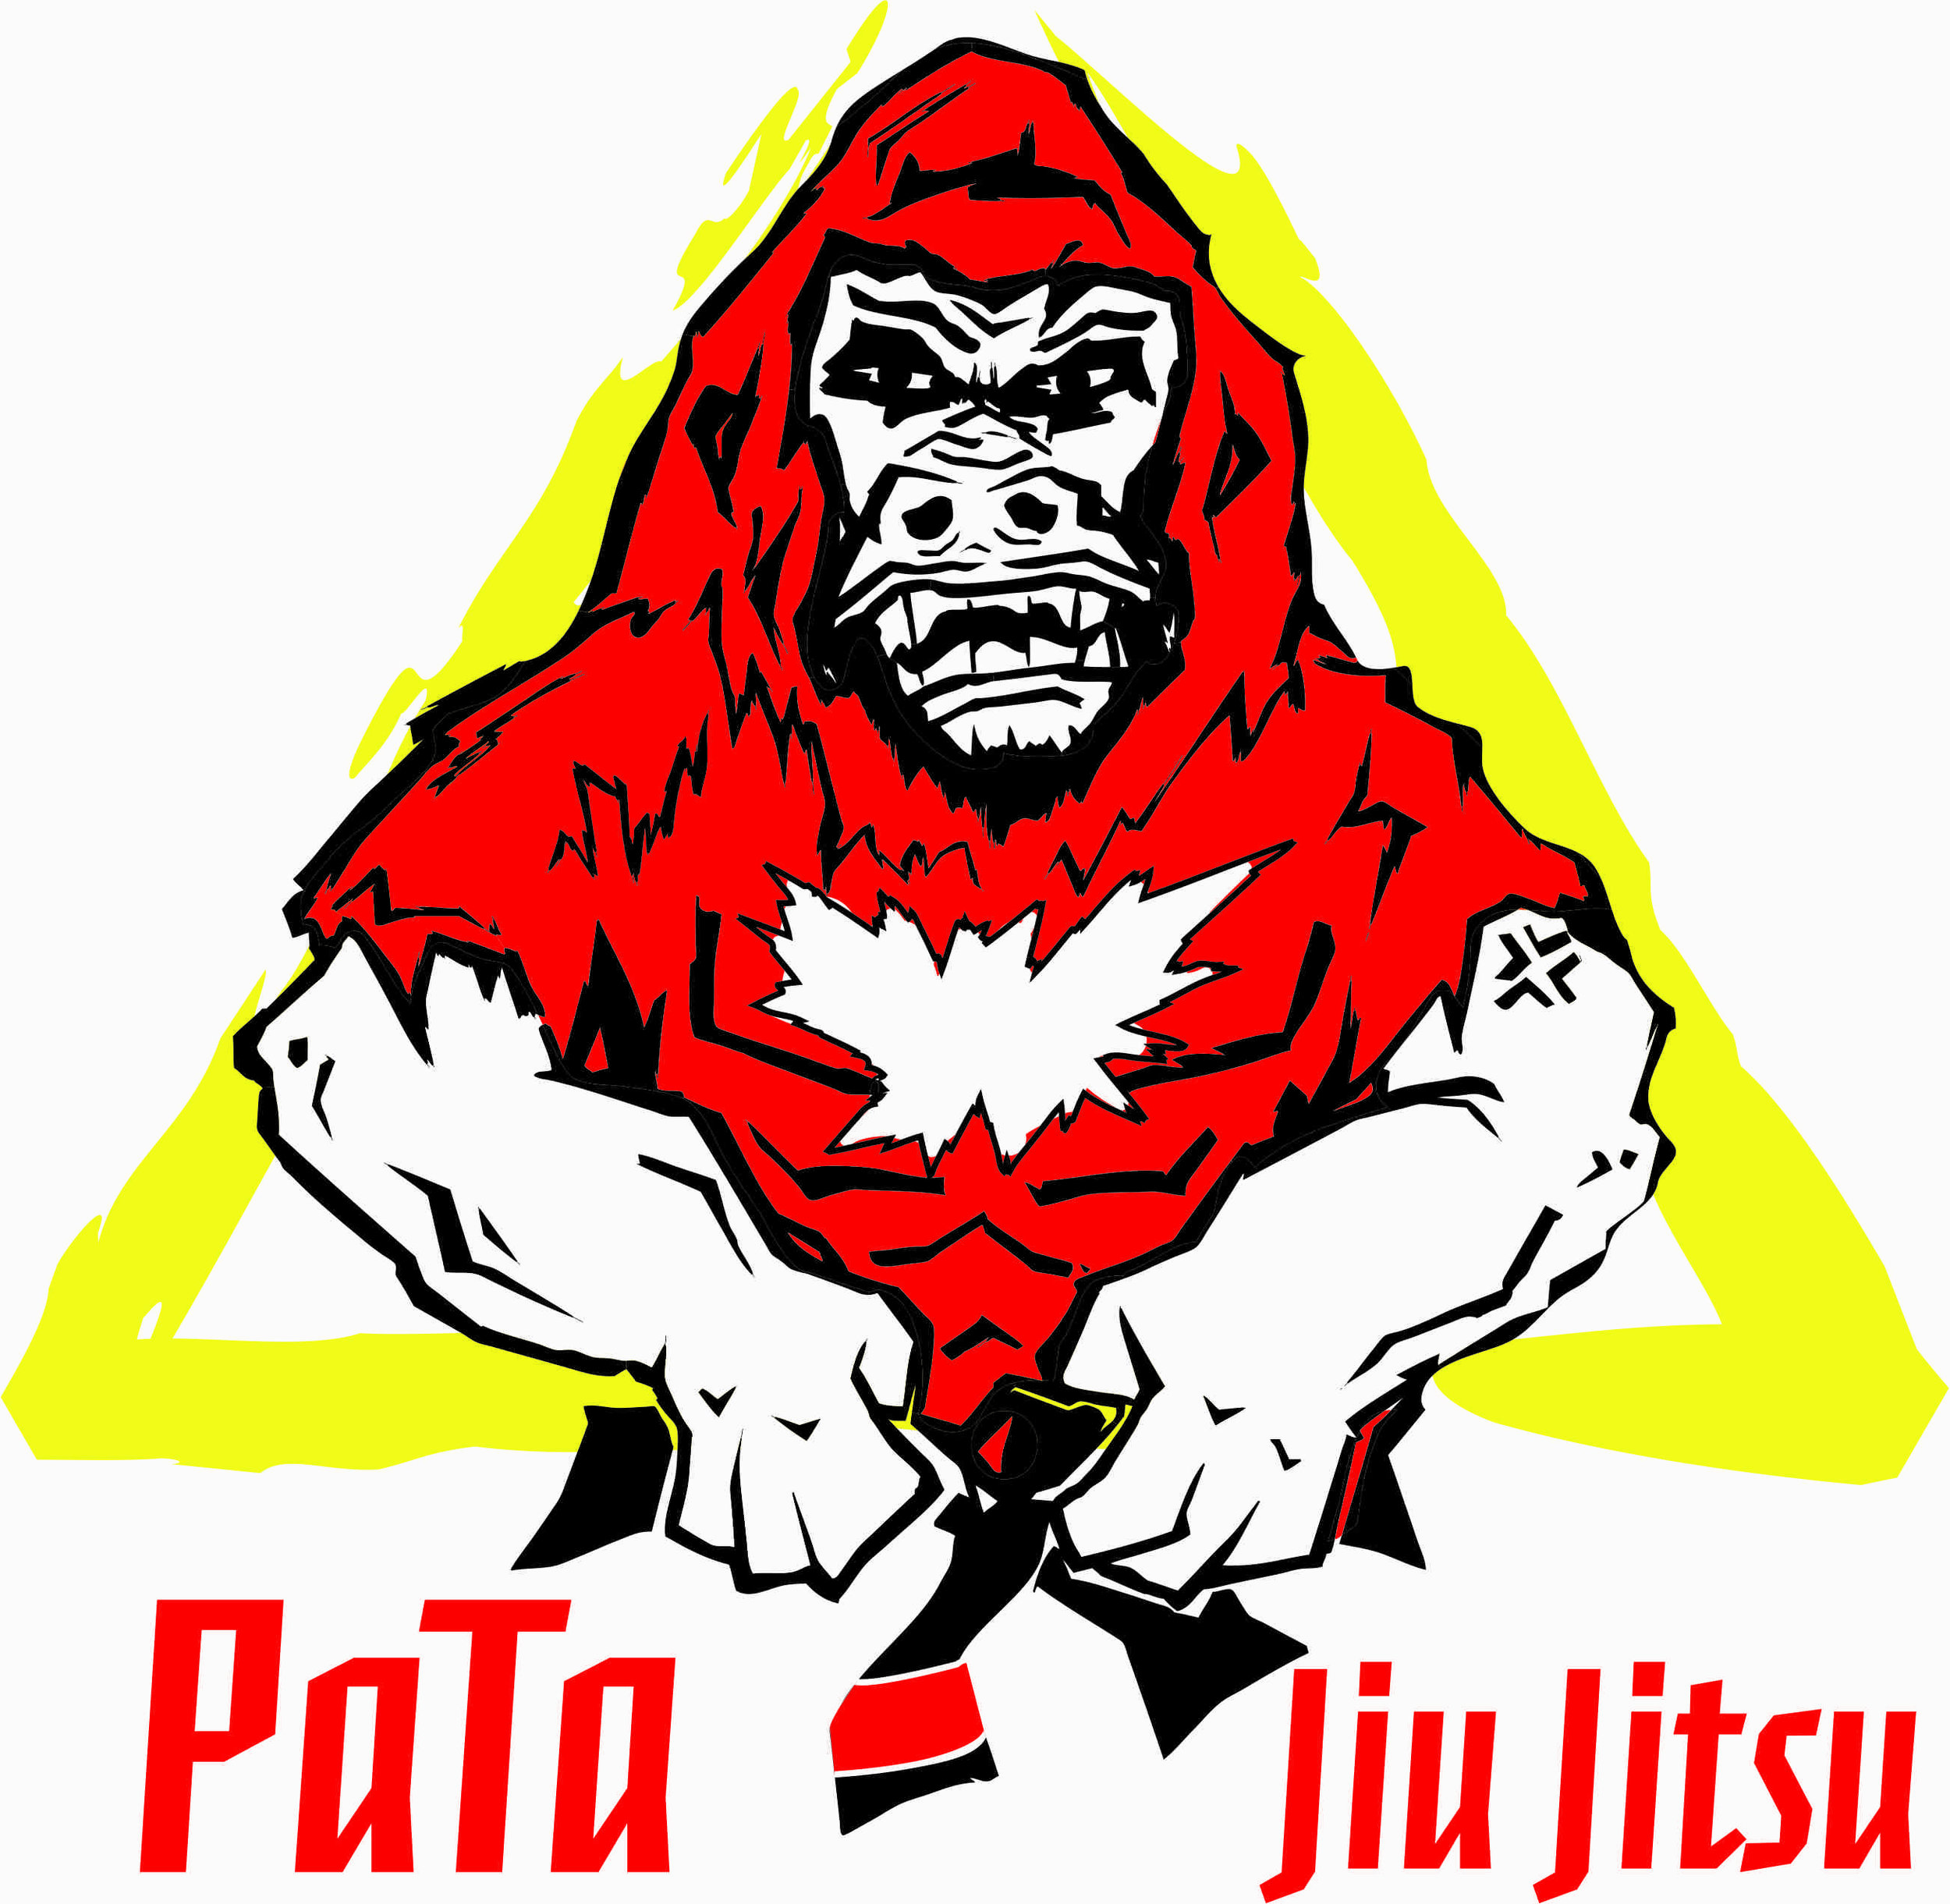 PaTa_Jiu_Jitsu_logo.jpg